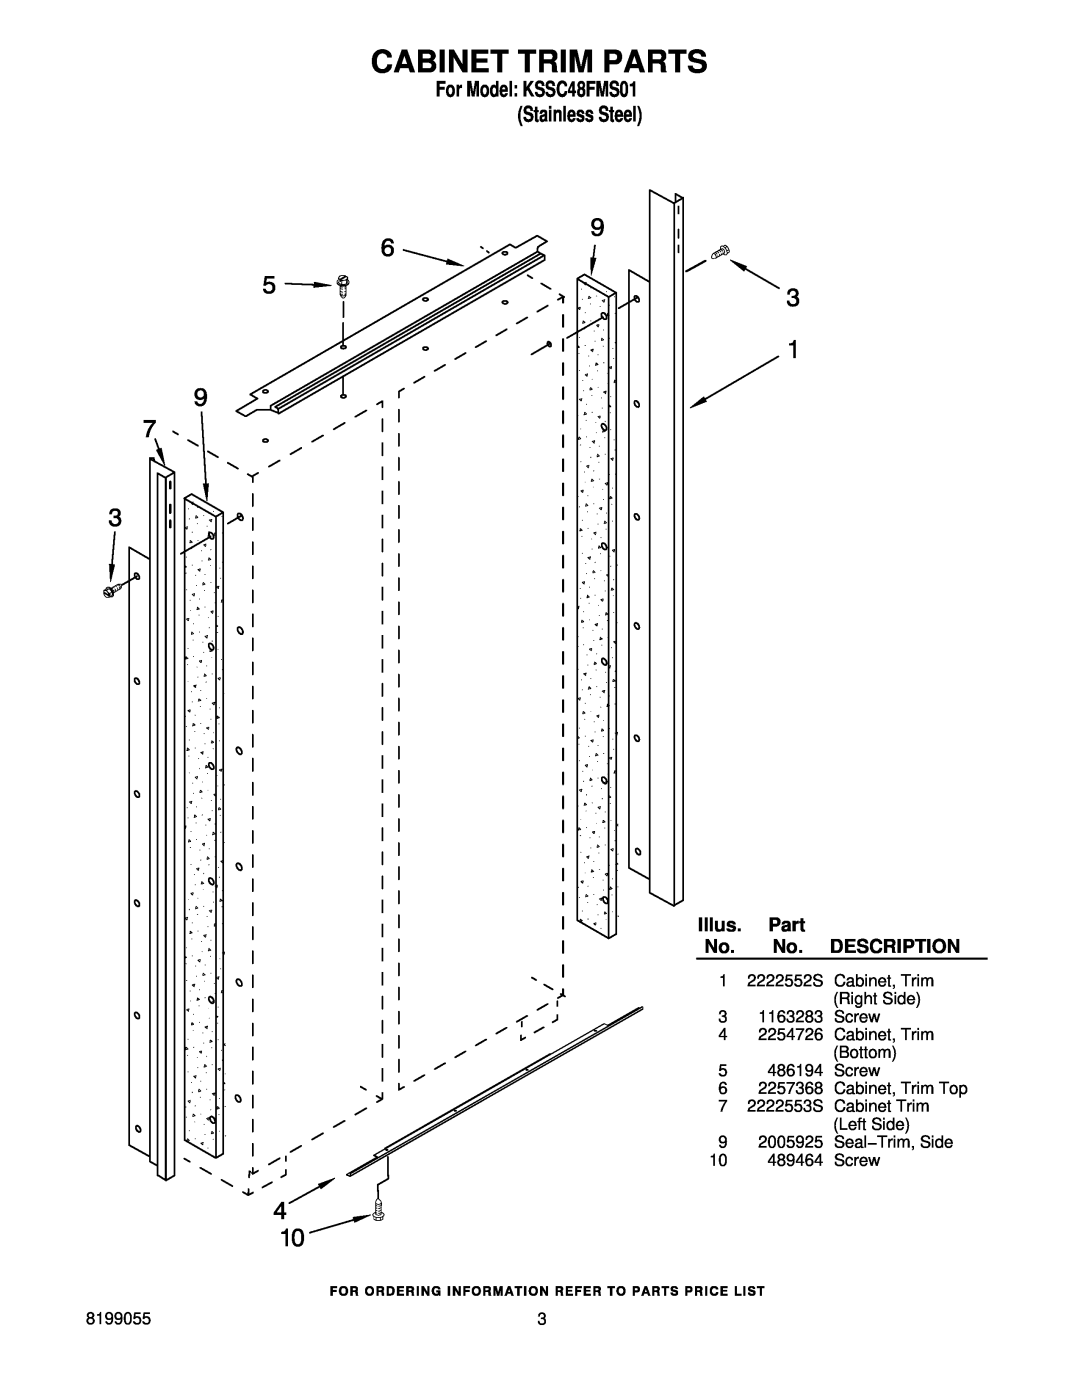 KitchenAid manual Cabinet Trim Parts, For Model KSSC48FMS01 Stainless Steel, Illus, Description 